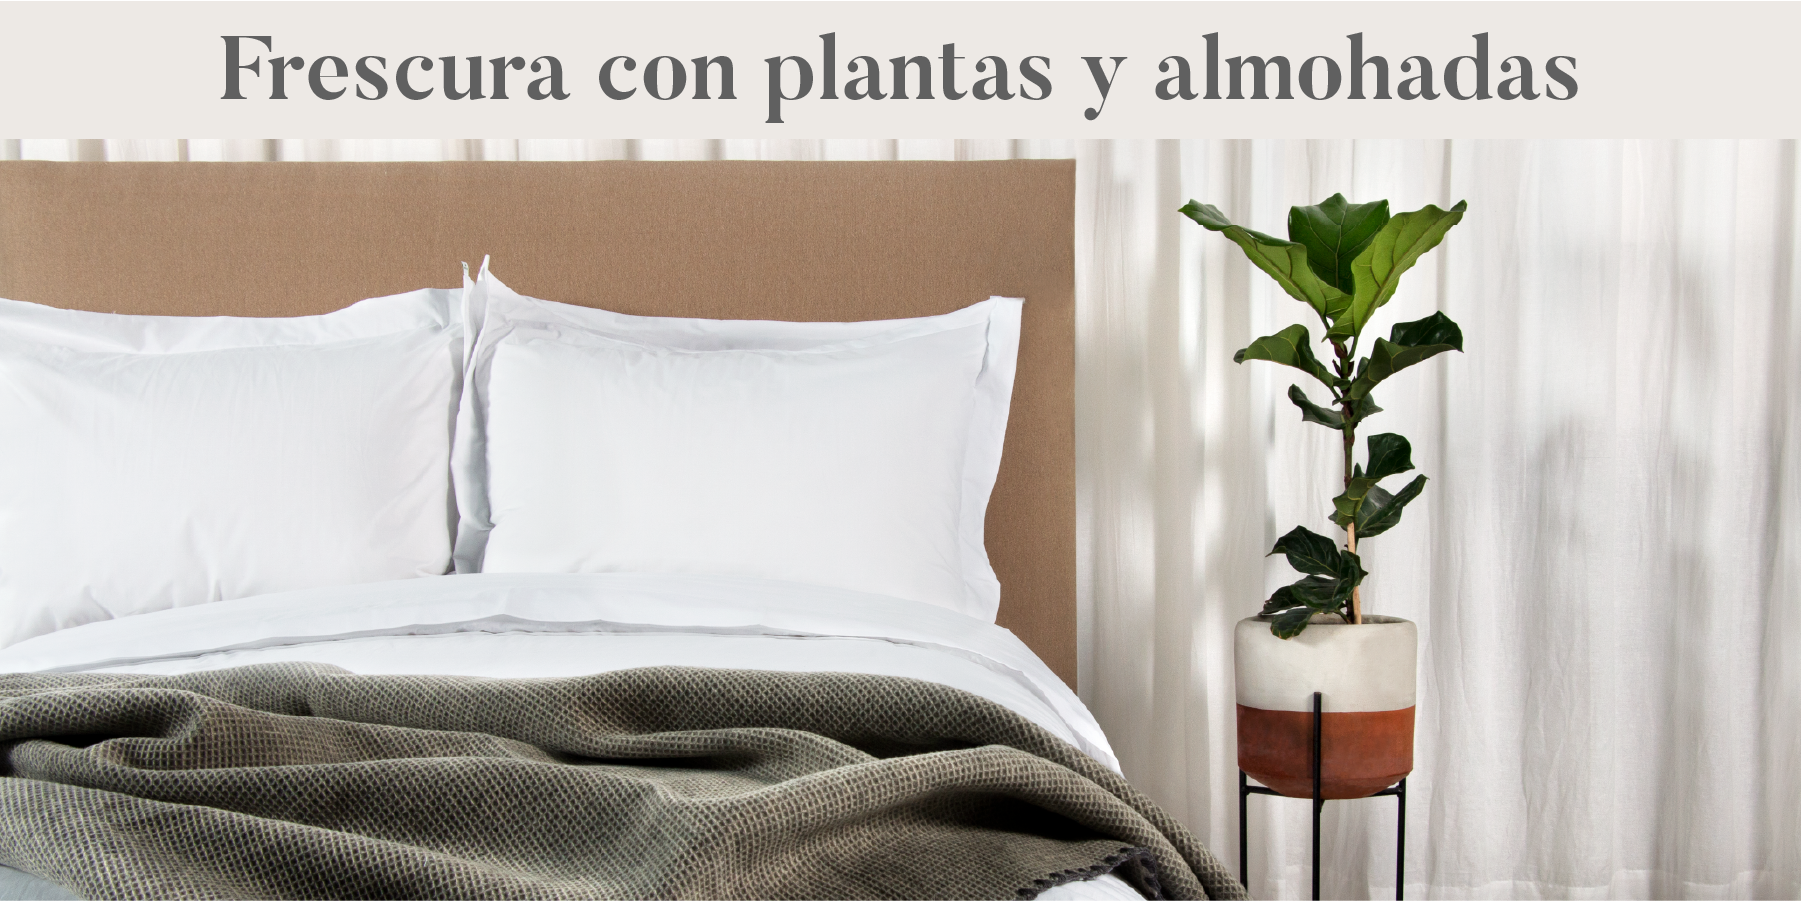 Plantas y almohadas habitaciones frescas